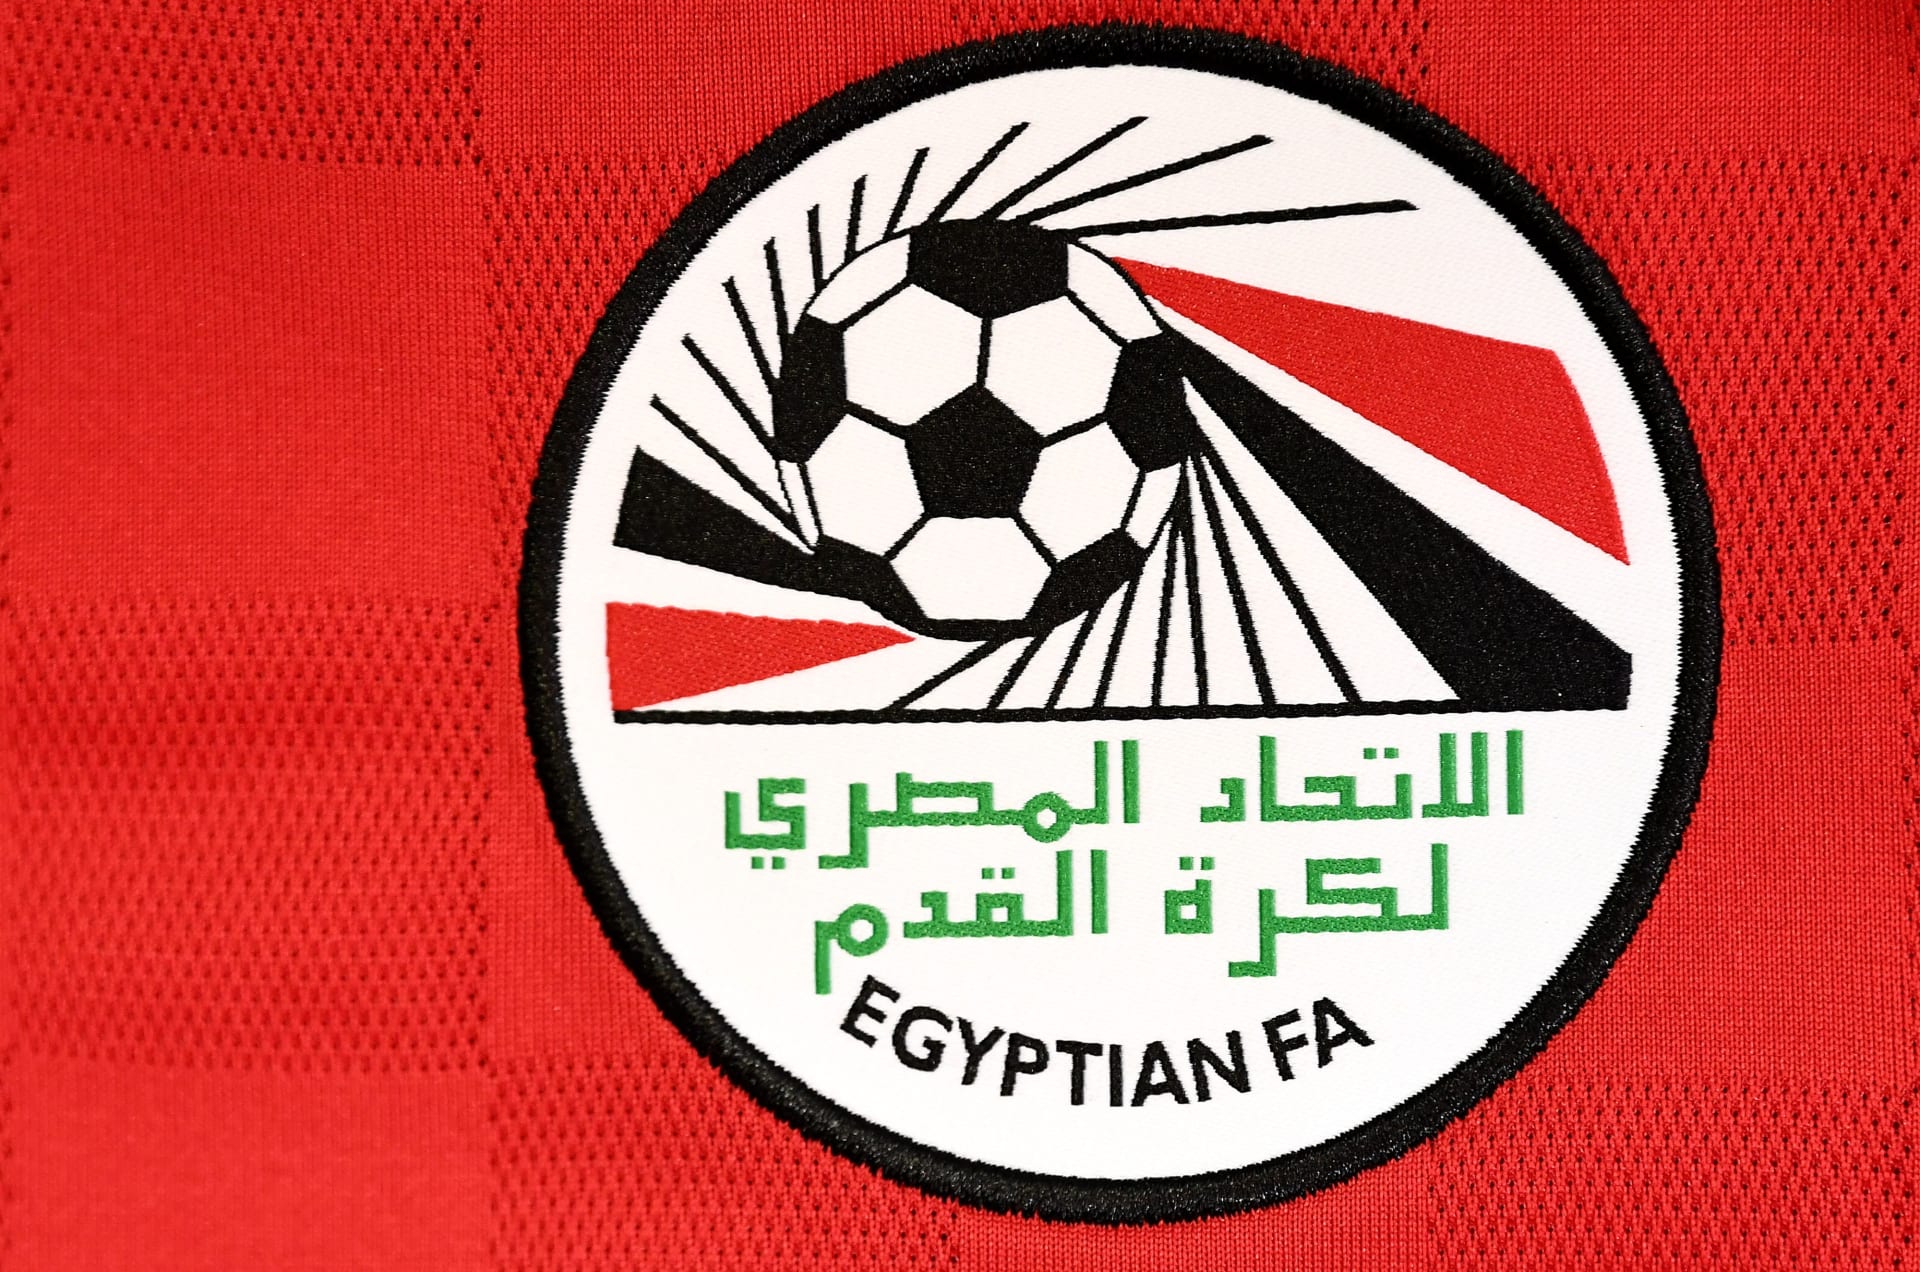 قميص المنتخب المصري الجديد يثير ردود فعل "ساخرة" على تويتر